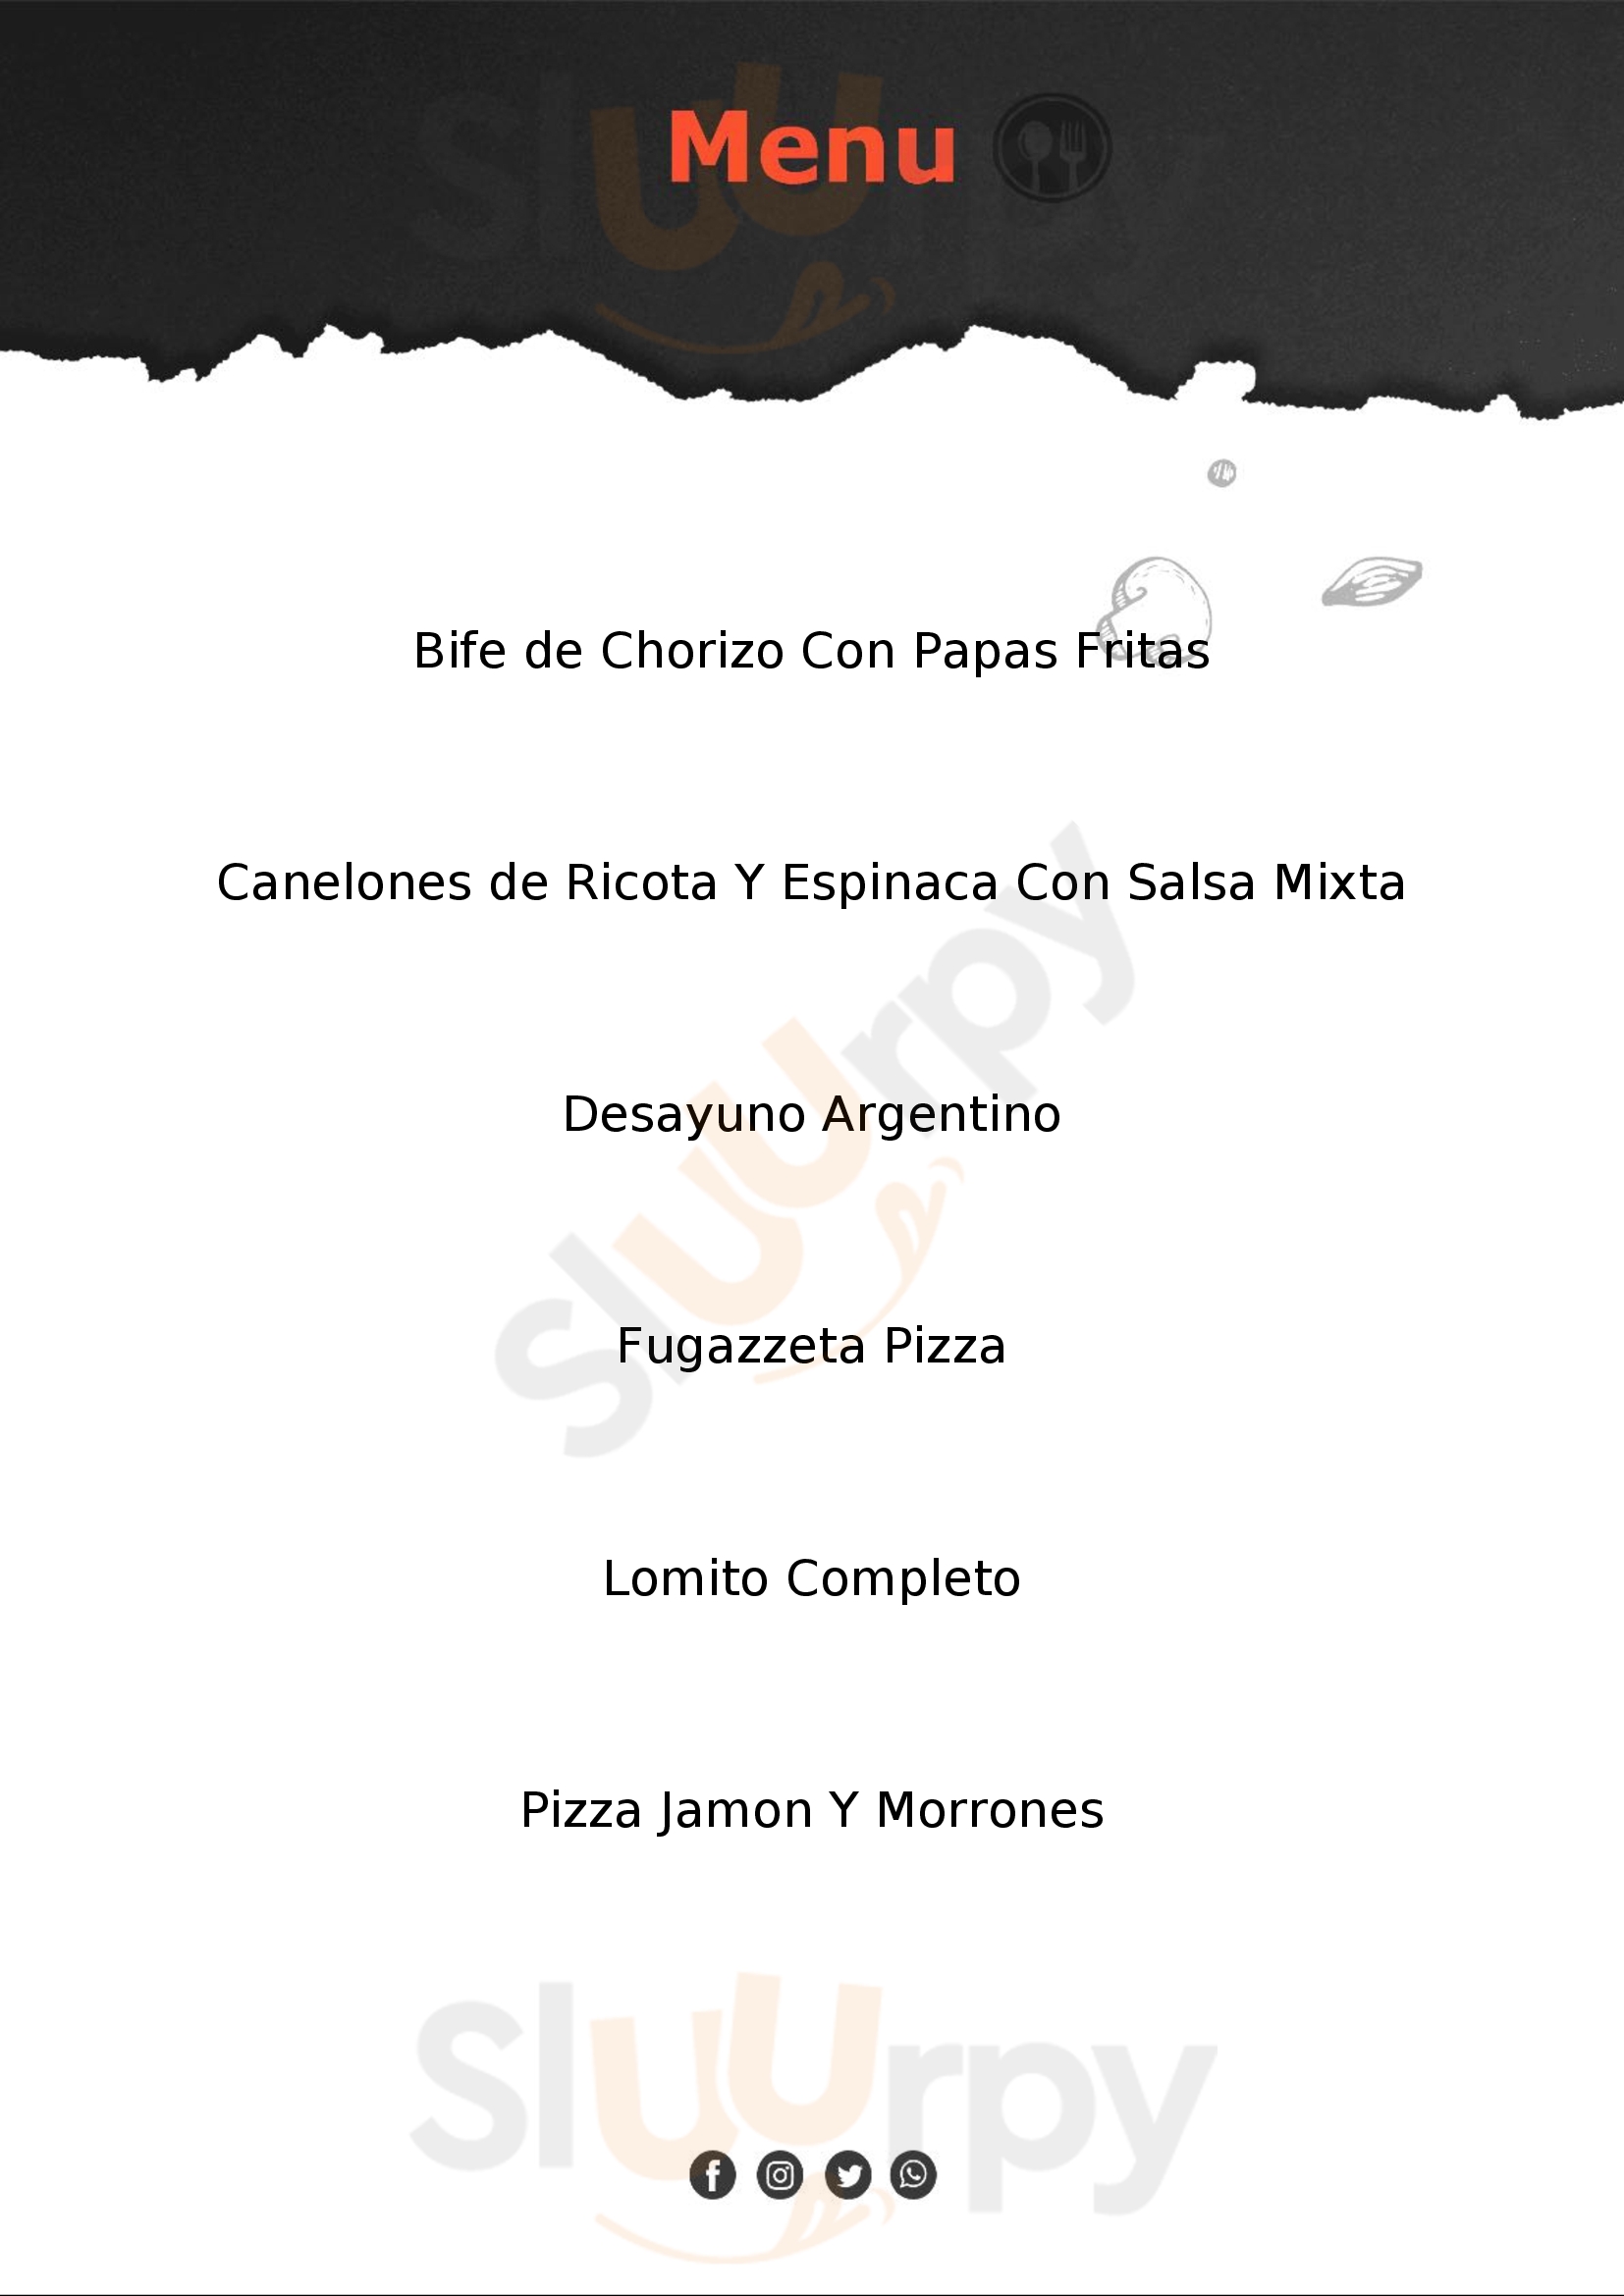 Andorra Pizza Cafe Estilo Buenos Aires Menu - 1